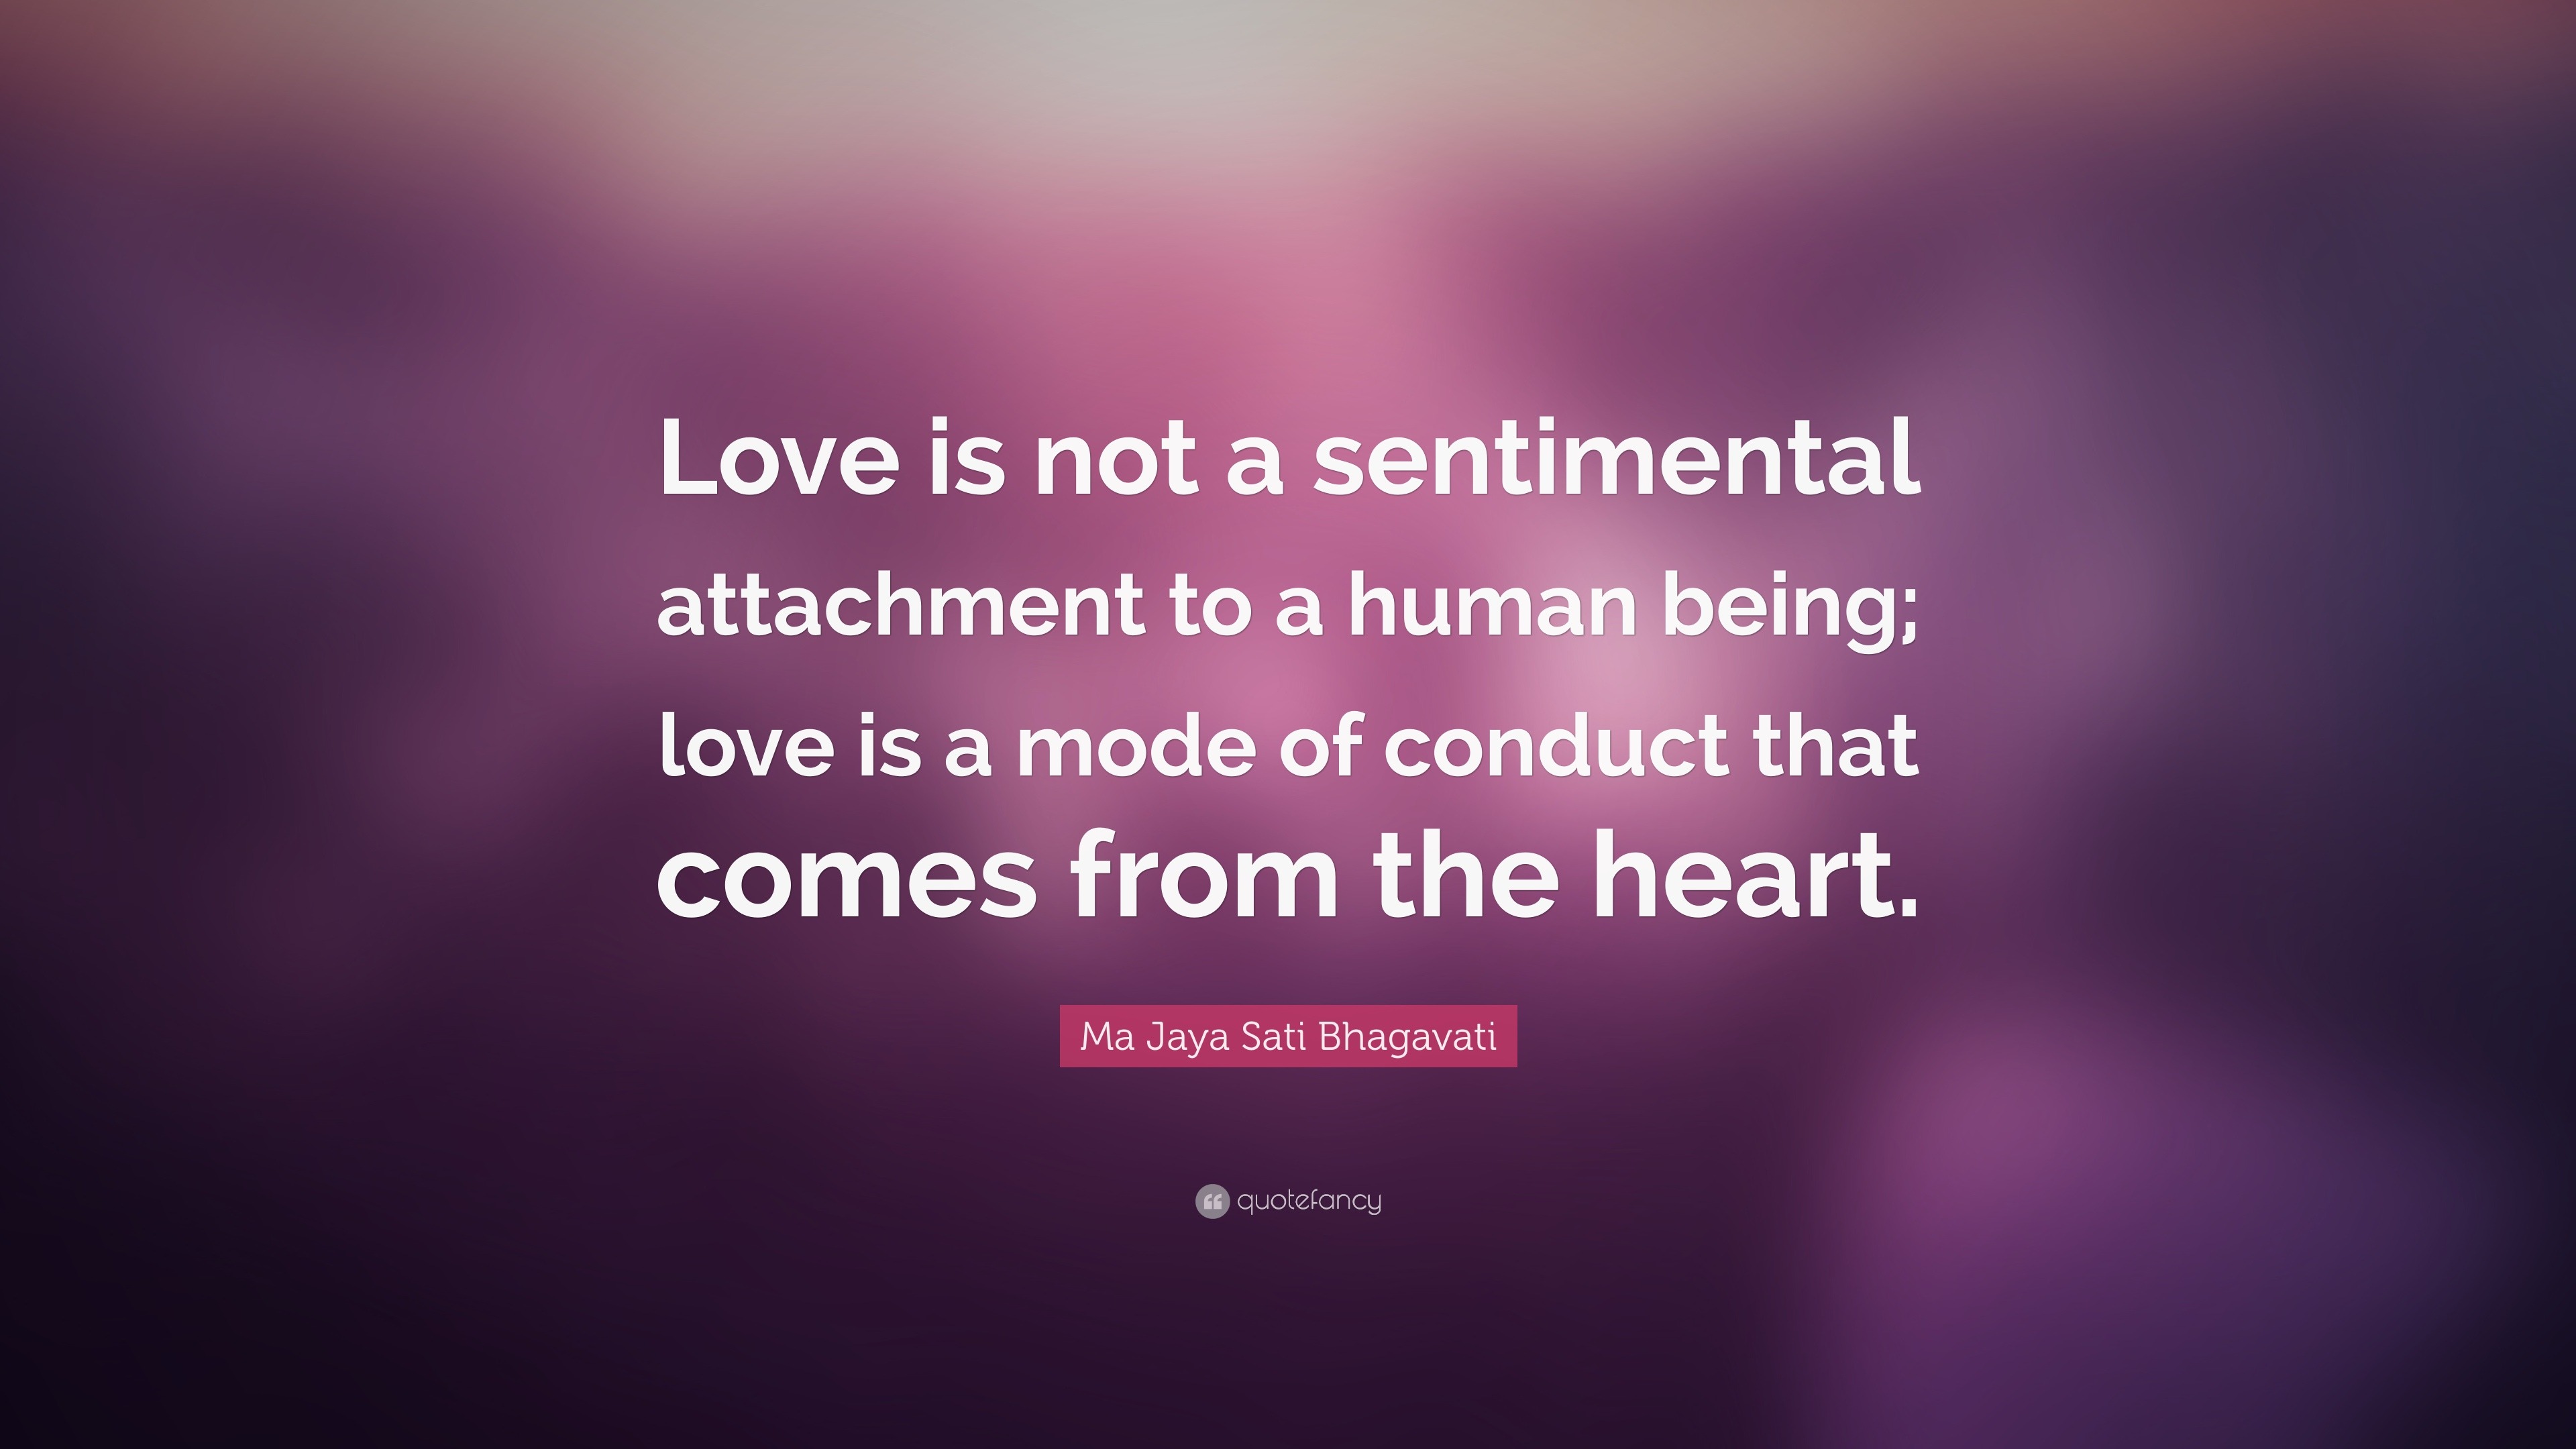 Ma Jaya Sati Bhagavati Quote “Love is not a sentimental attachment to a human